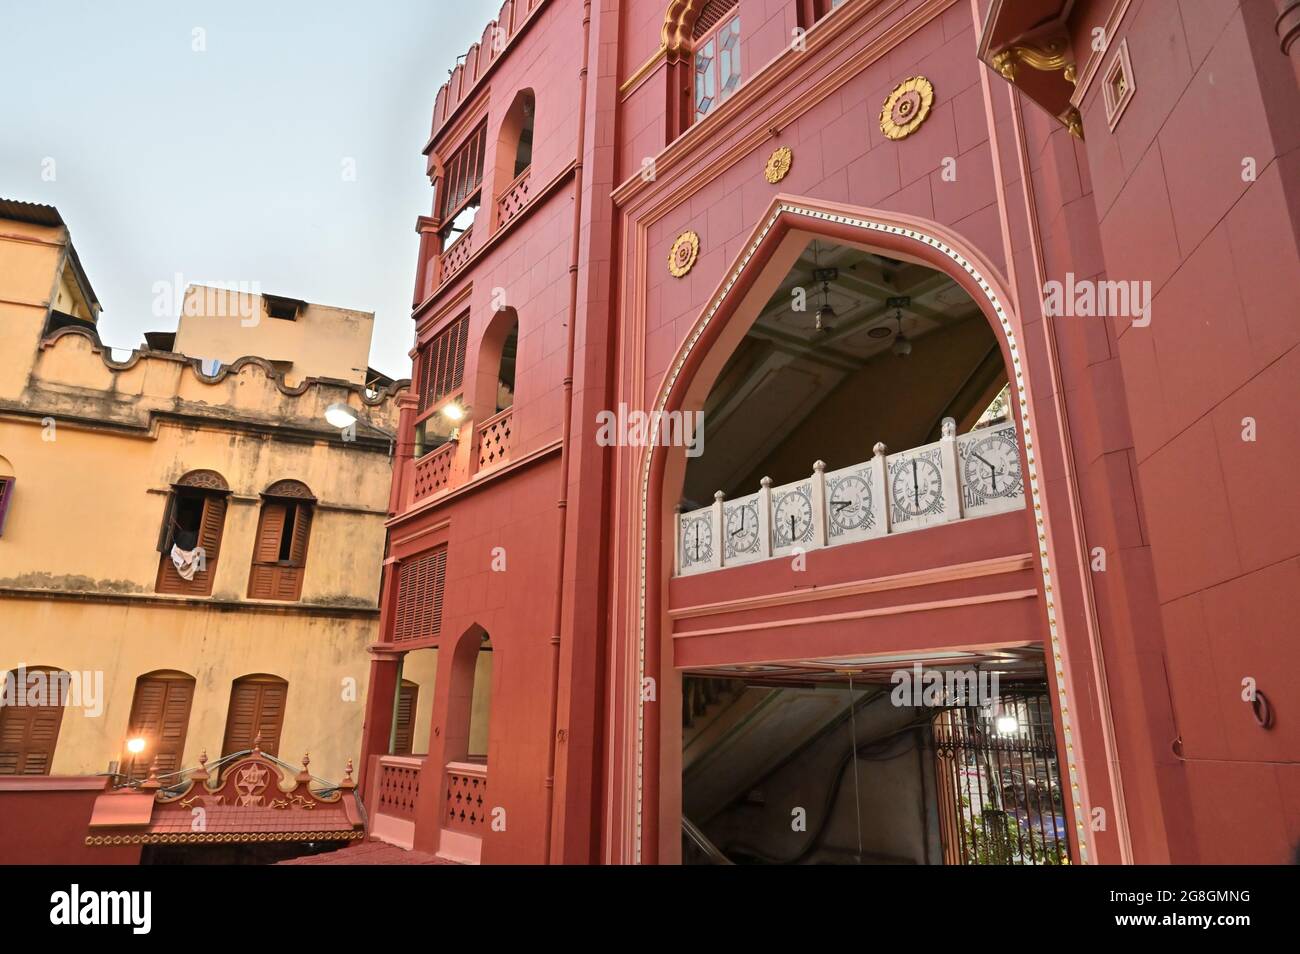 Bella architettura rossa coulured di Nakhoda Mashid nel centro di Kolkata. Questo luogo è famoso per la riunione della comunità musulmana per la celebrazione dell'Eid., Foto Stock